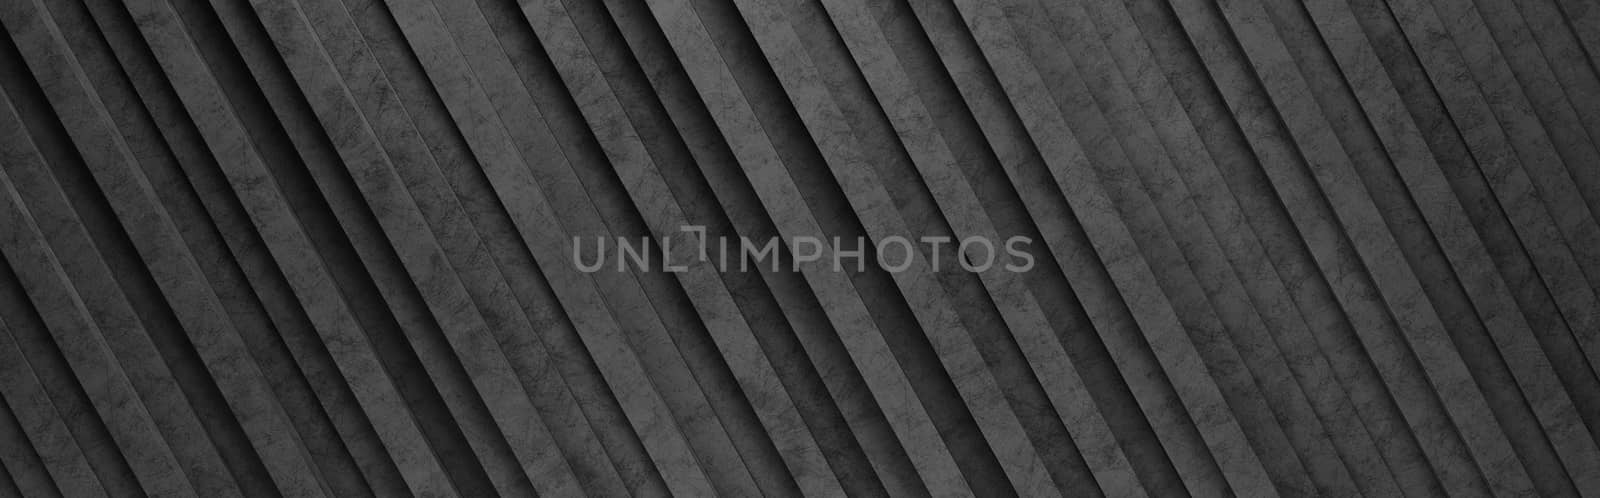 Black Diagonal Stripes 3D Pattern Background by make